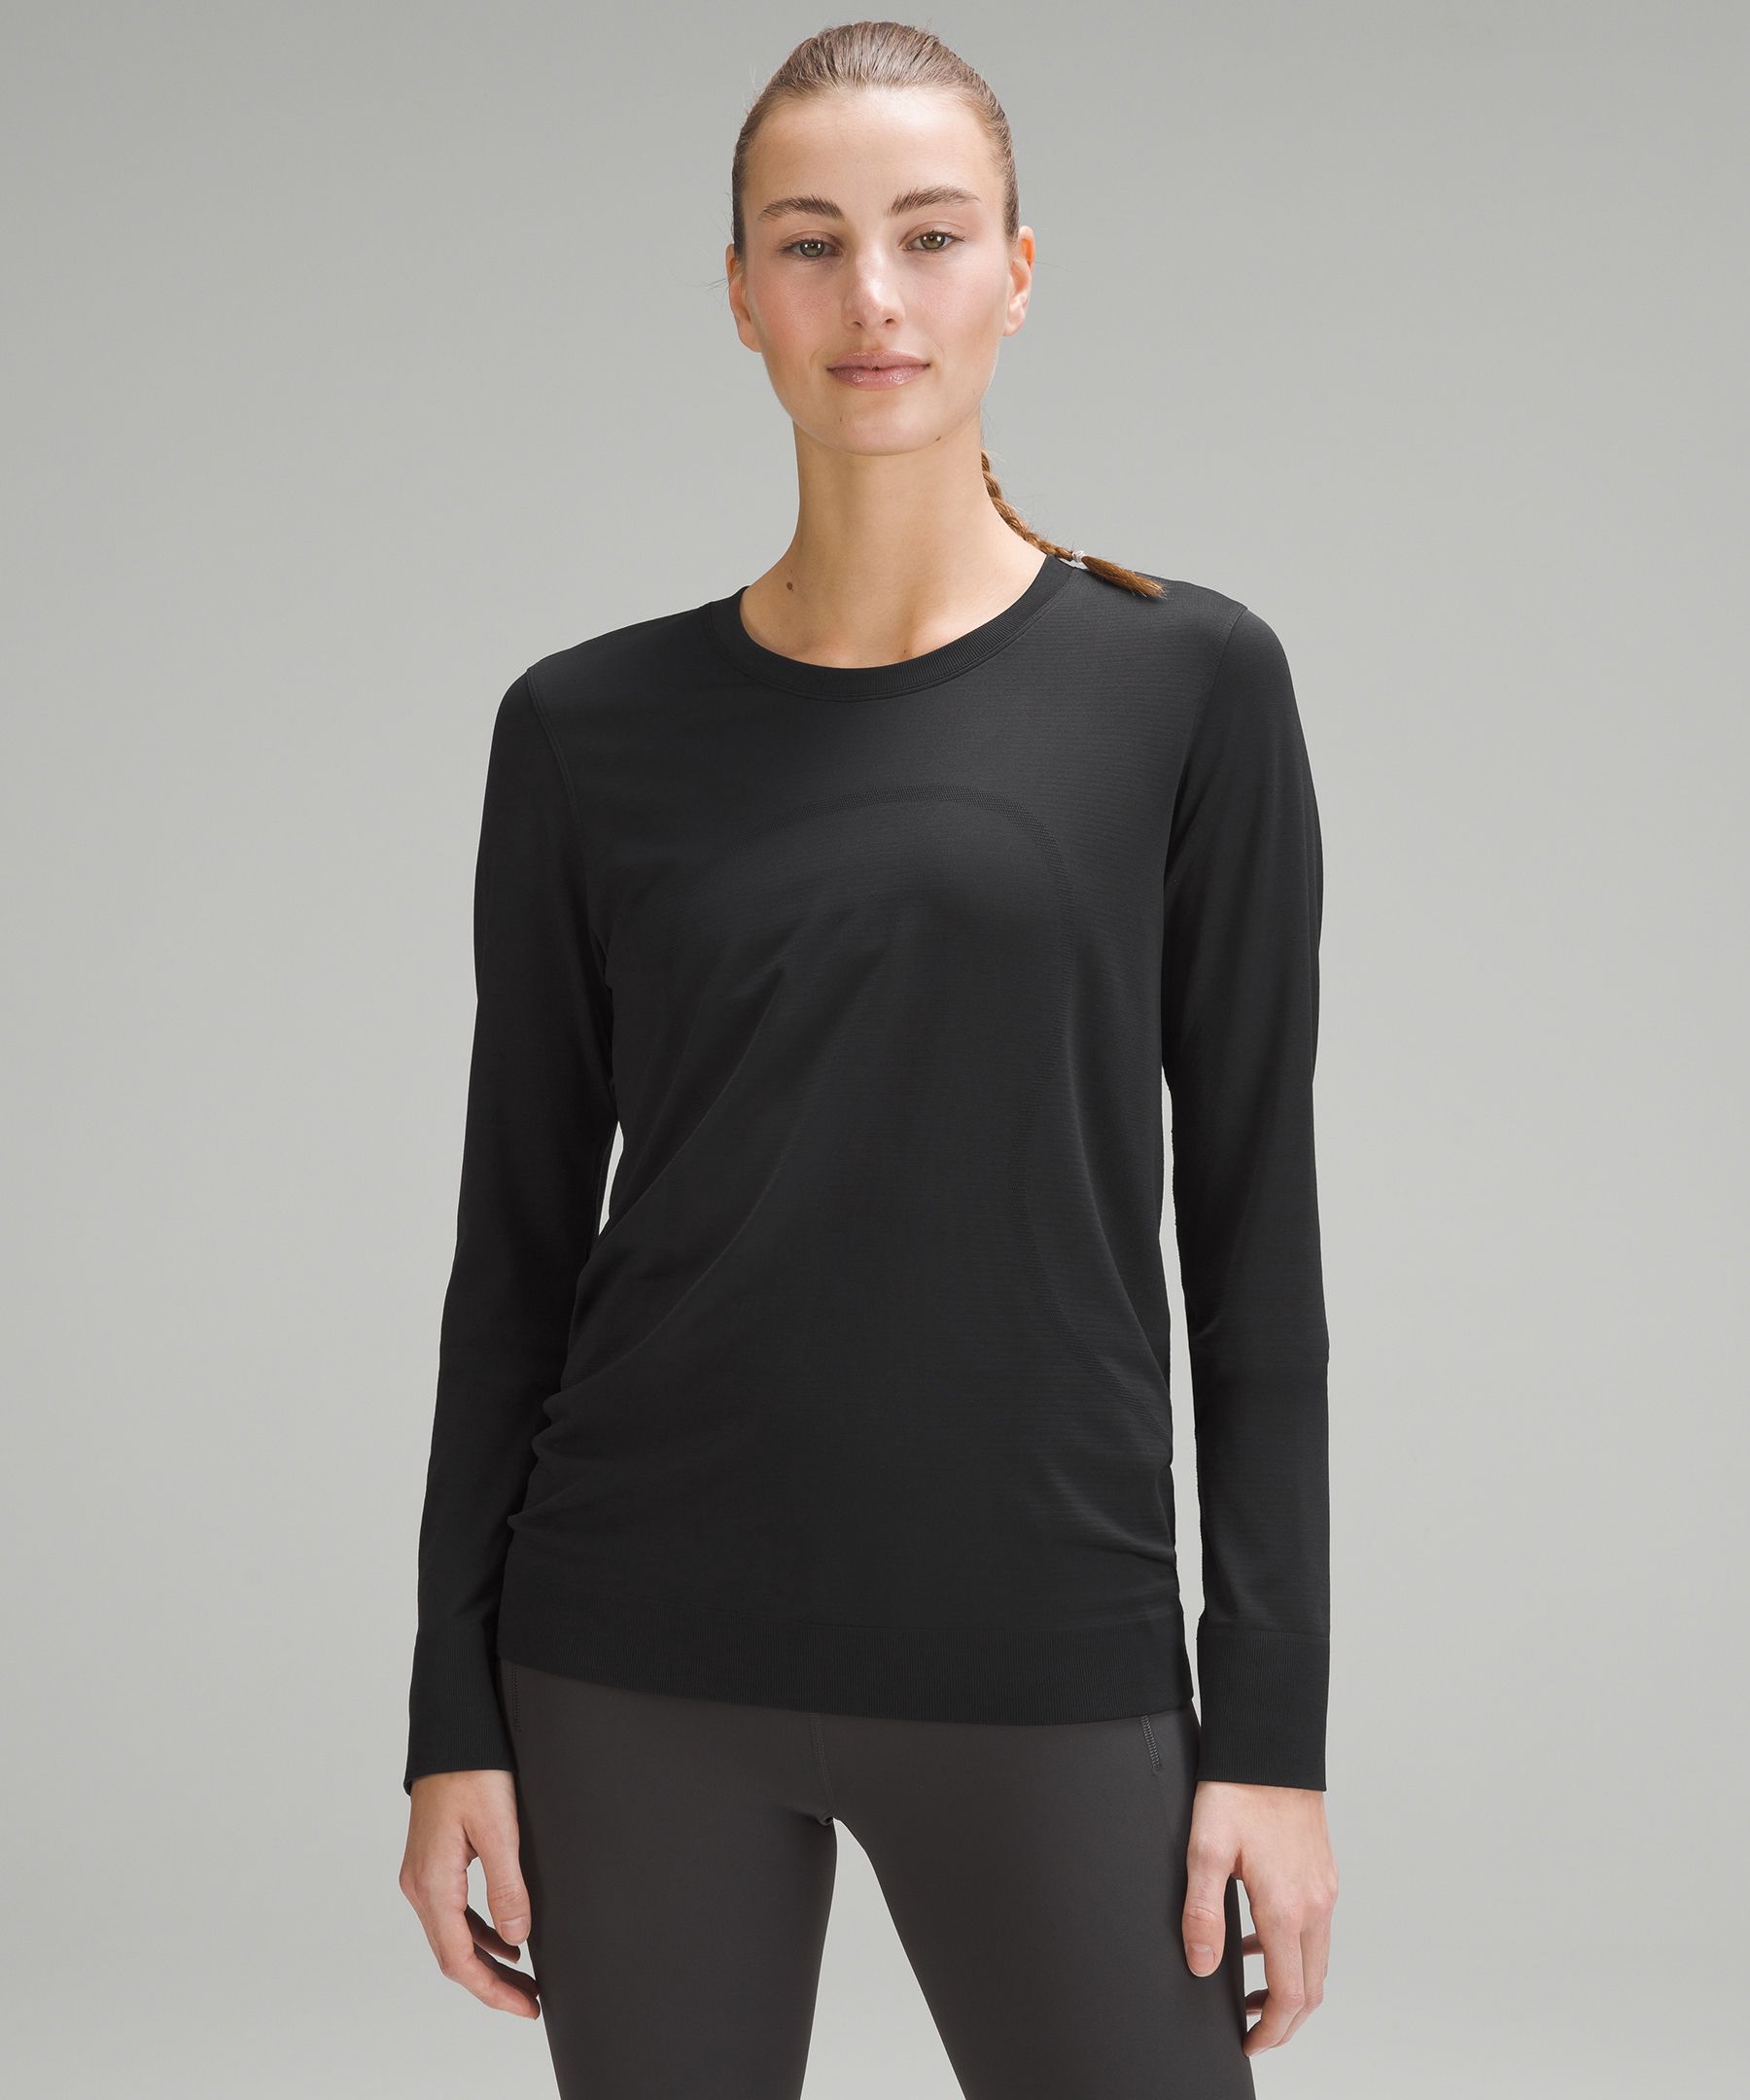 Lululemon Training Swiftly Relaxed Long-Sleeve Shirt - Black/Neutral - Size 4